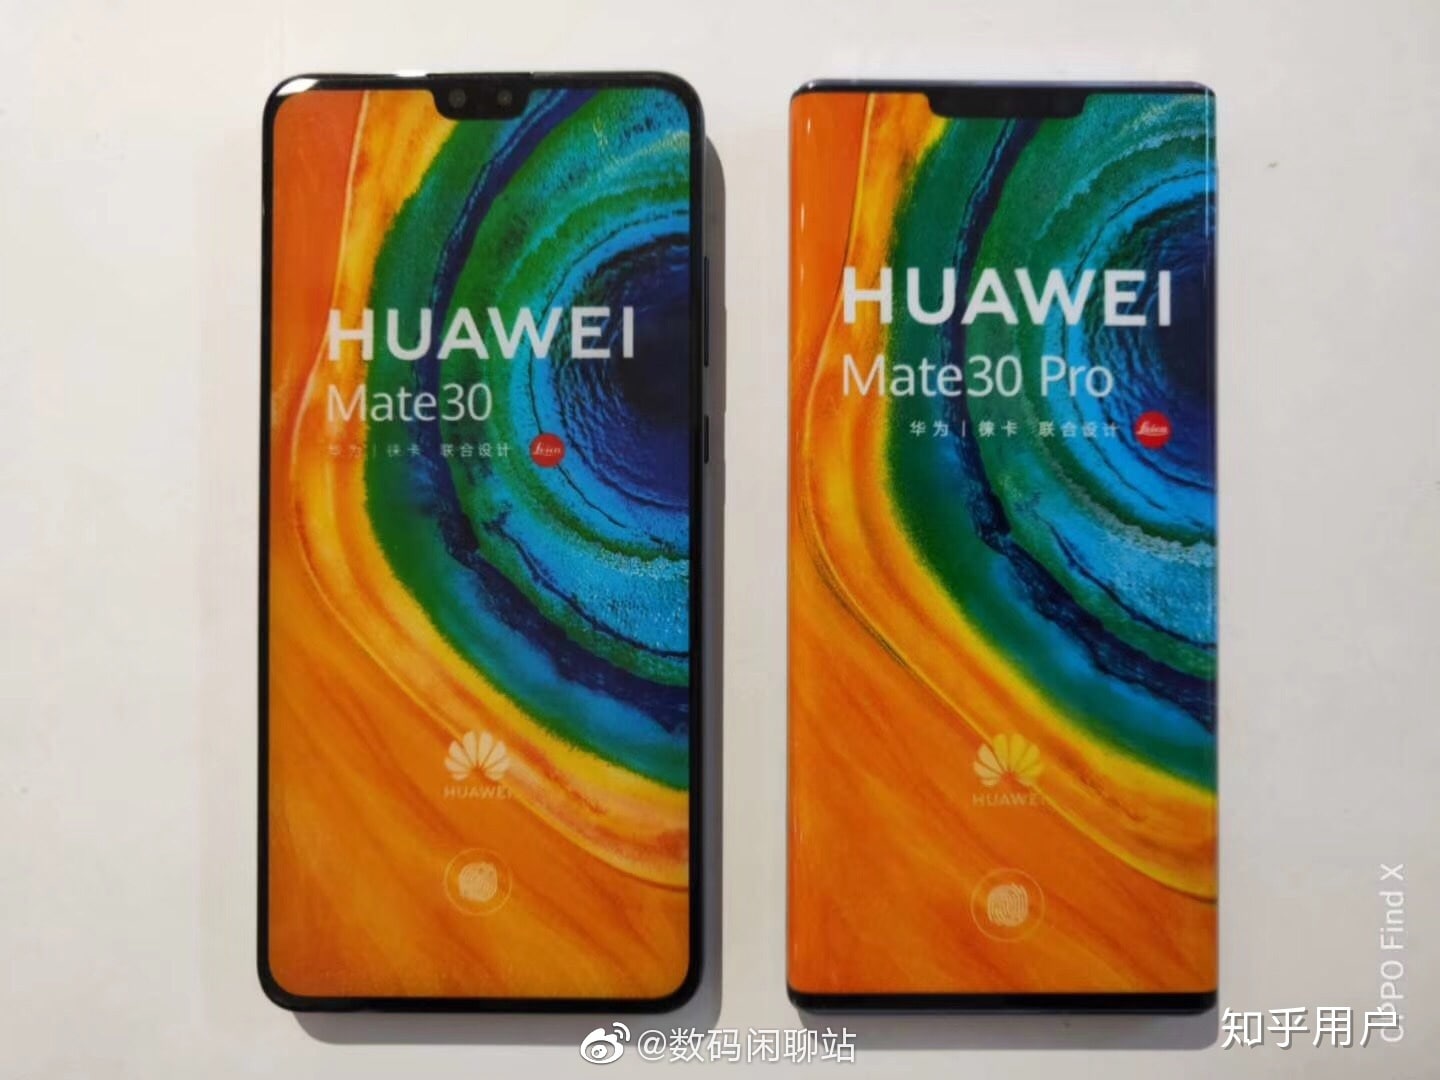 Huawei Mate 30 Pro alla prima apparizione su AnTuTu batte tutti gli Snapdragon 855 (e un paio di iPhone 11) (foto)